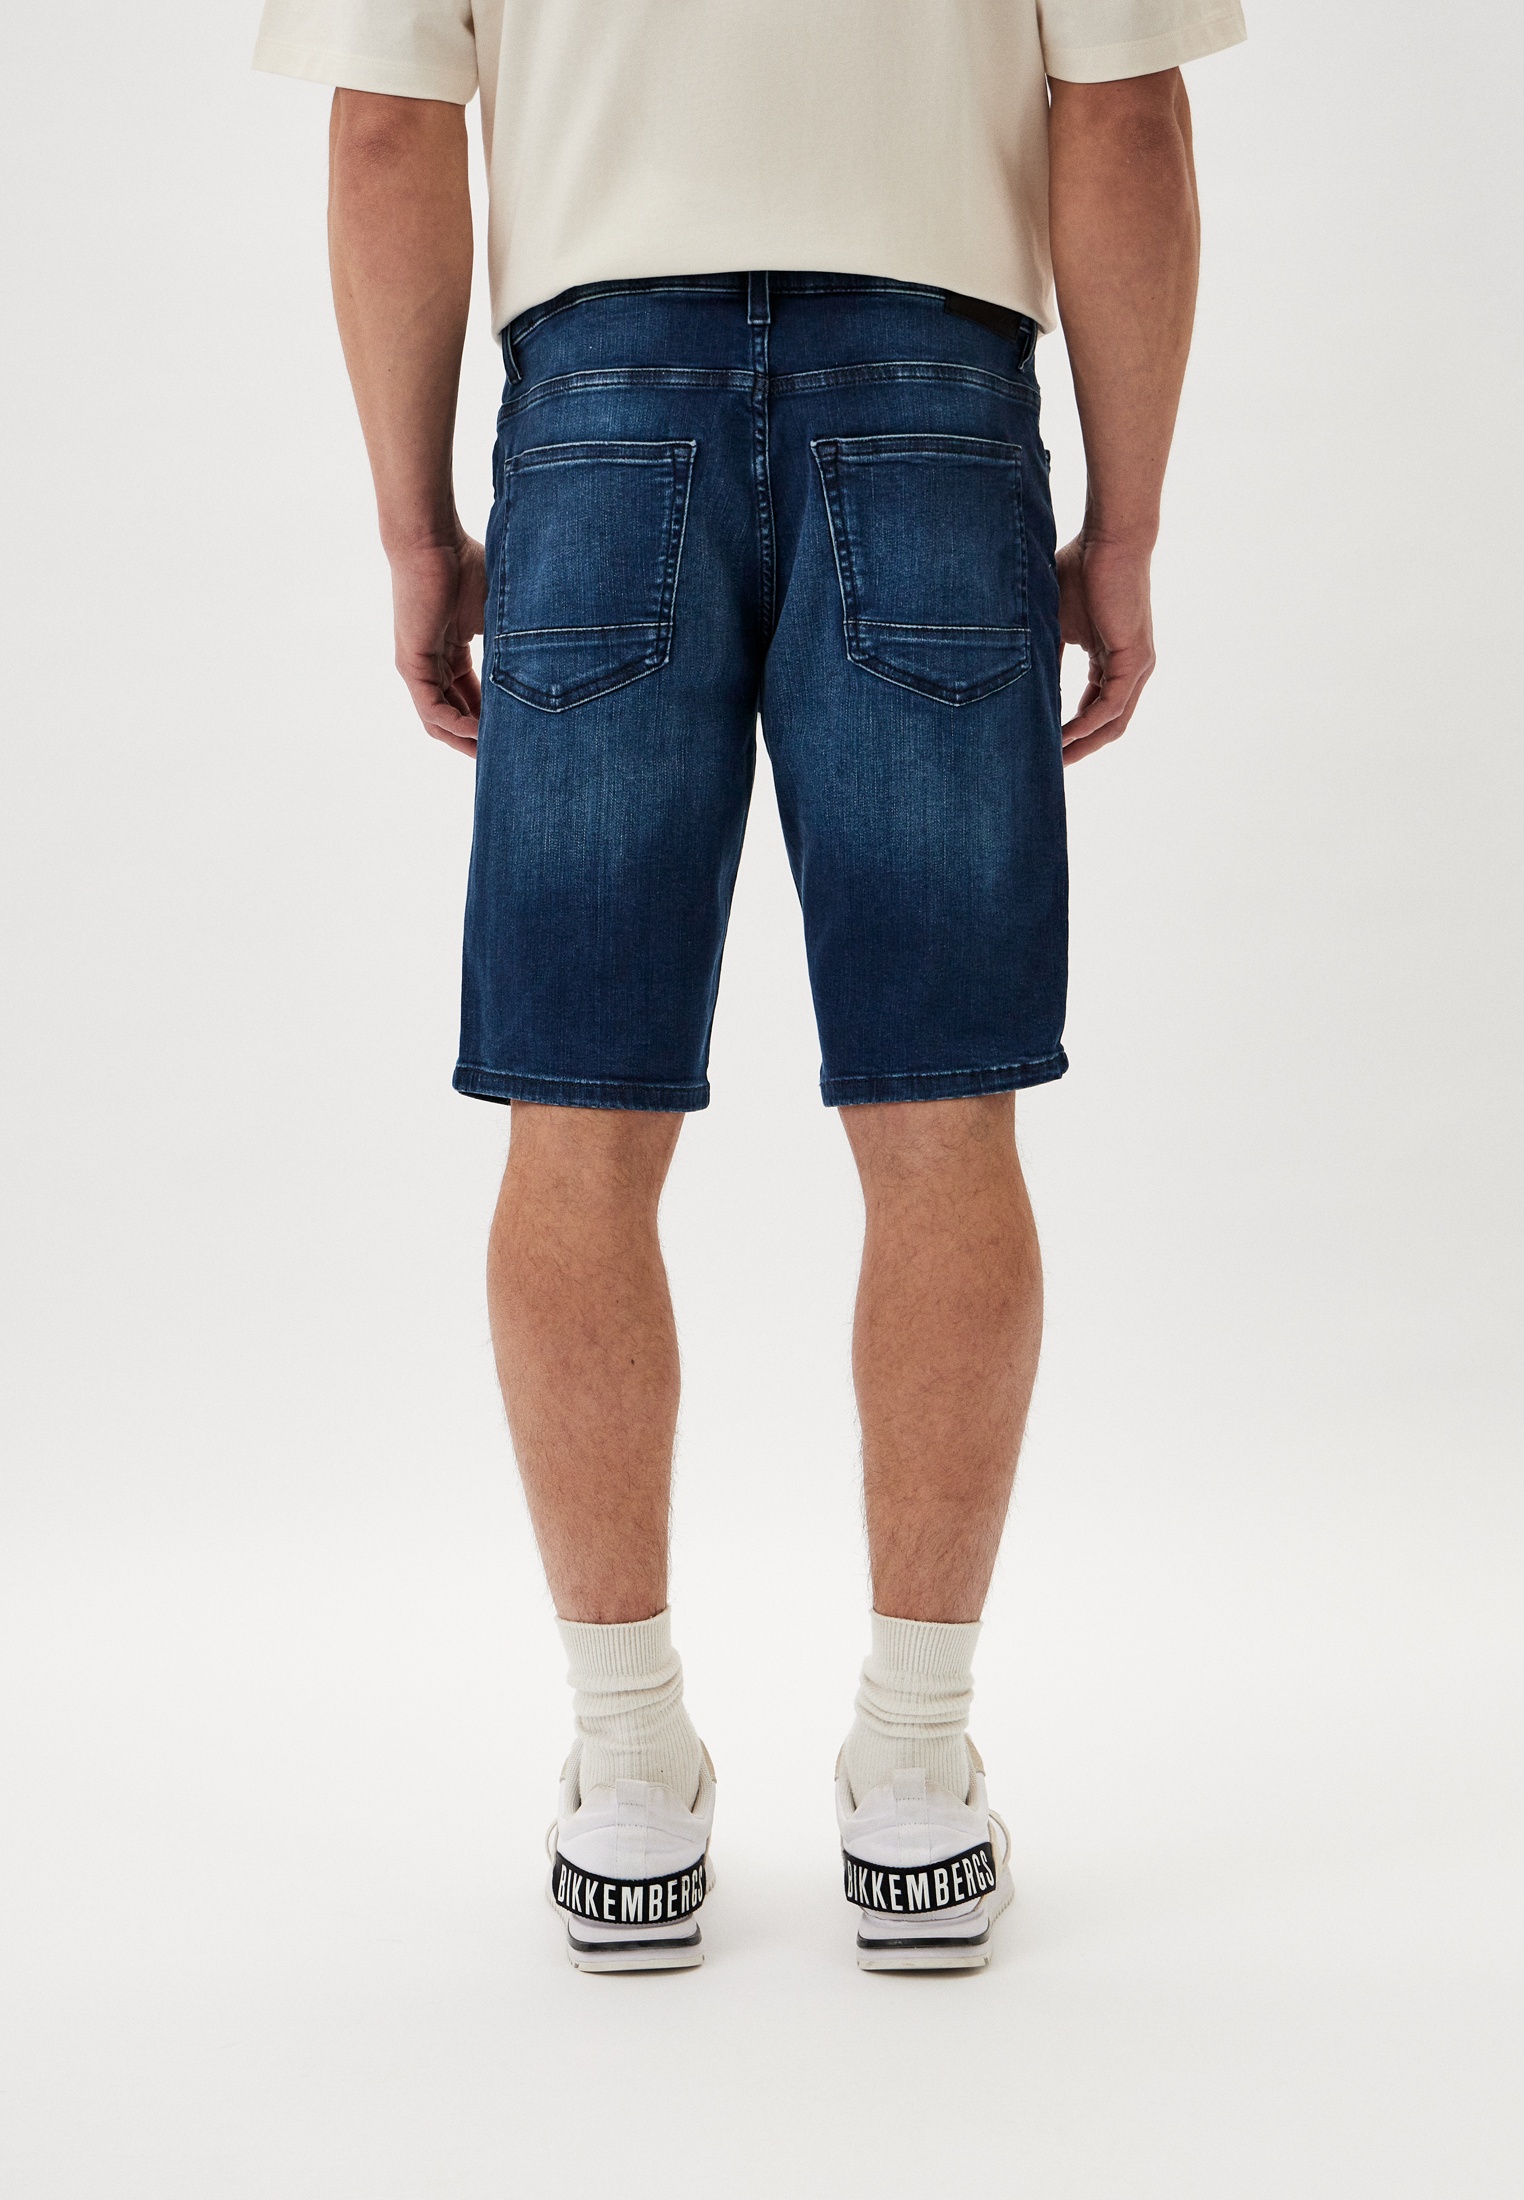 Мужские джинсовые шорты Boss (Босс) 50513494: изображение 3